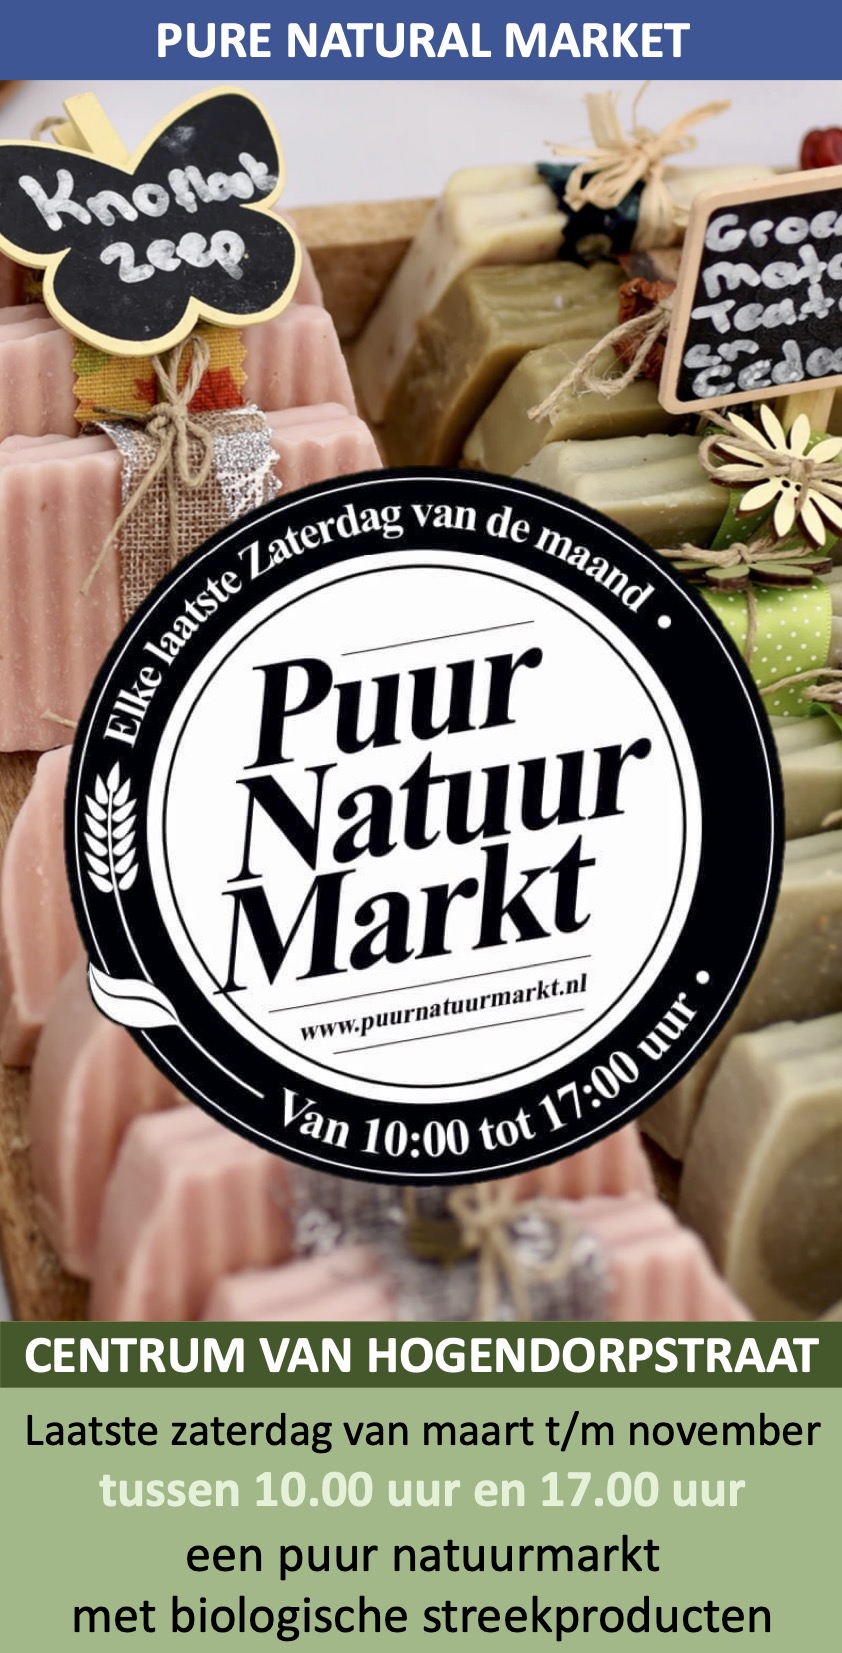 Puur Natuur Markt Wassenaar van Hogendorpstraat laatste zaterdag